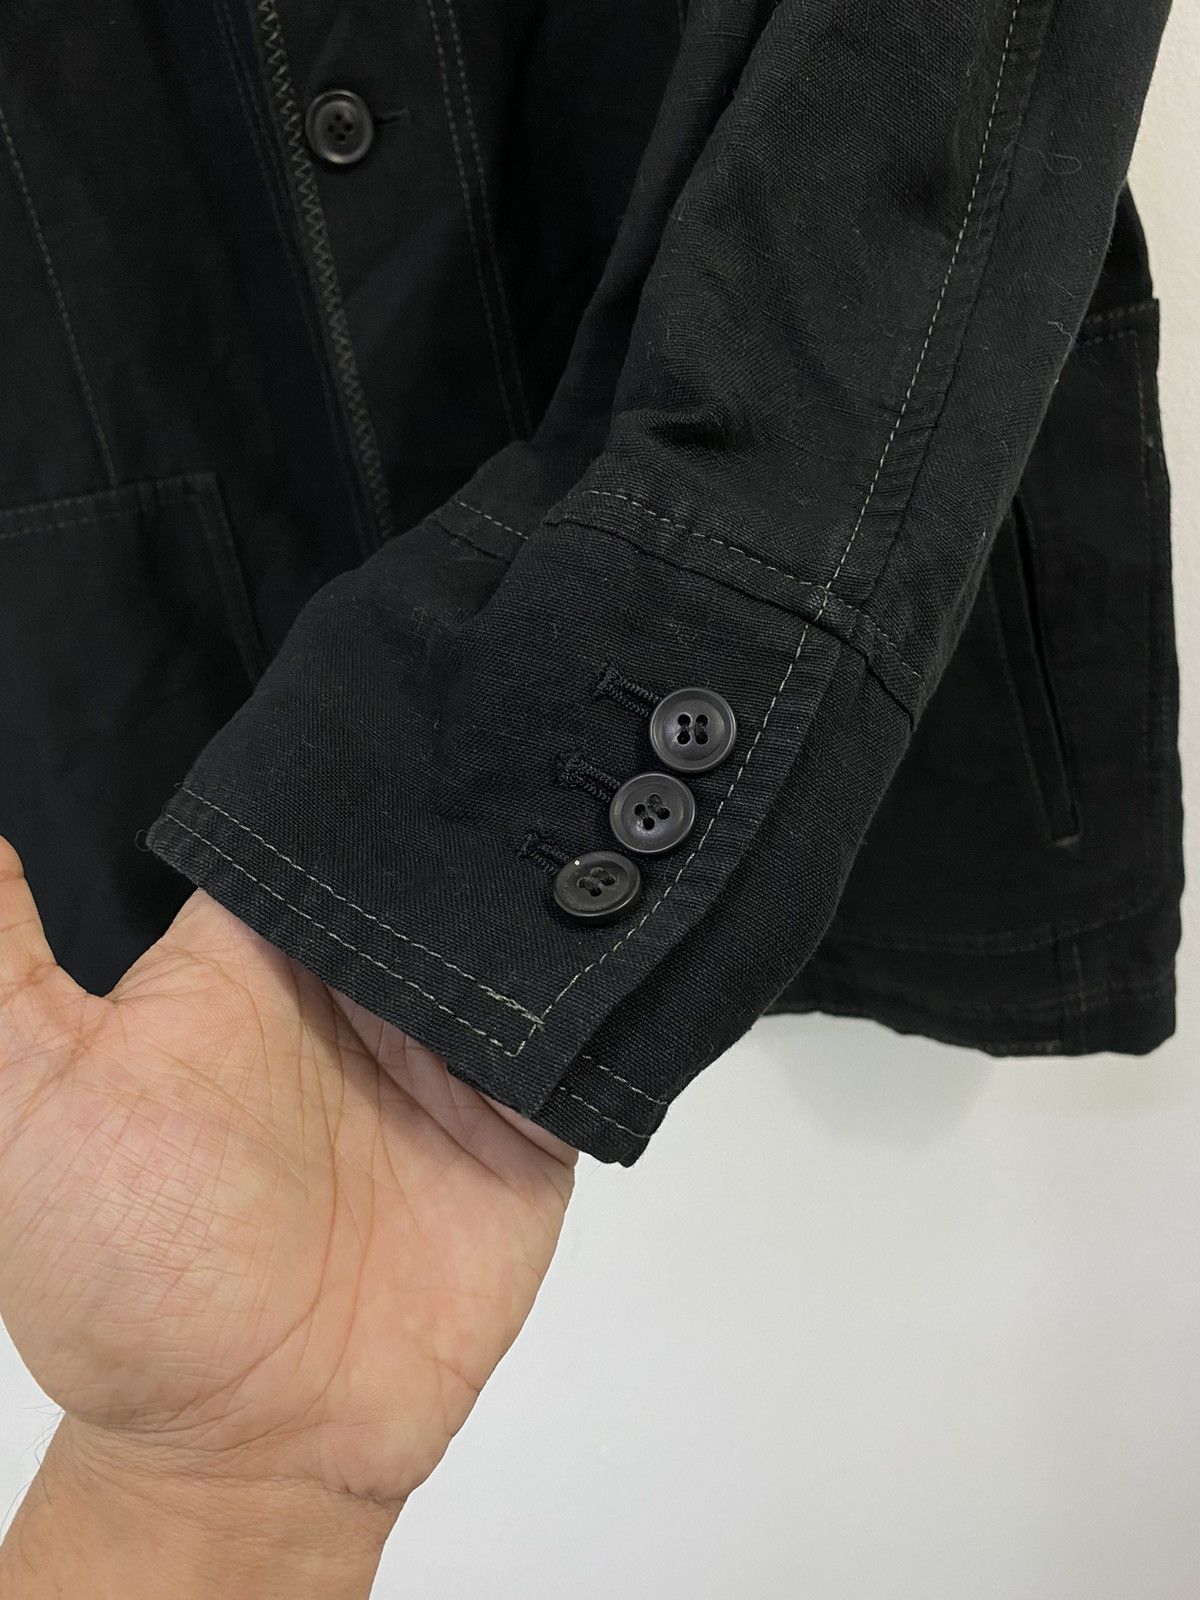 Lanvin Linen Jacket 4 Pocket Design Made in Japan - 4